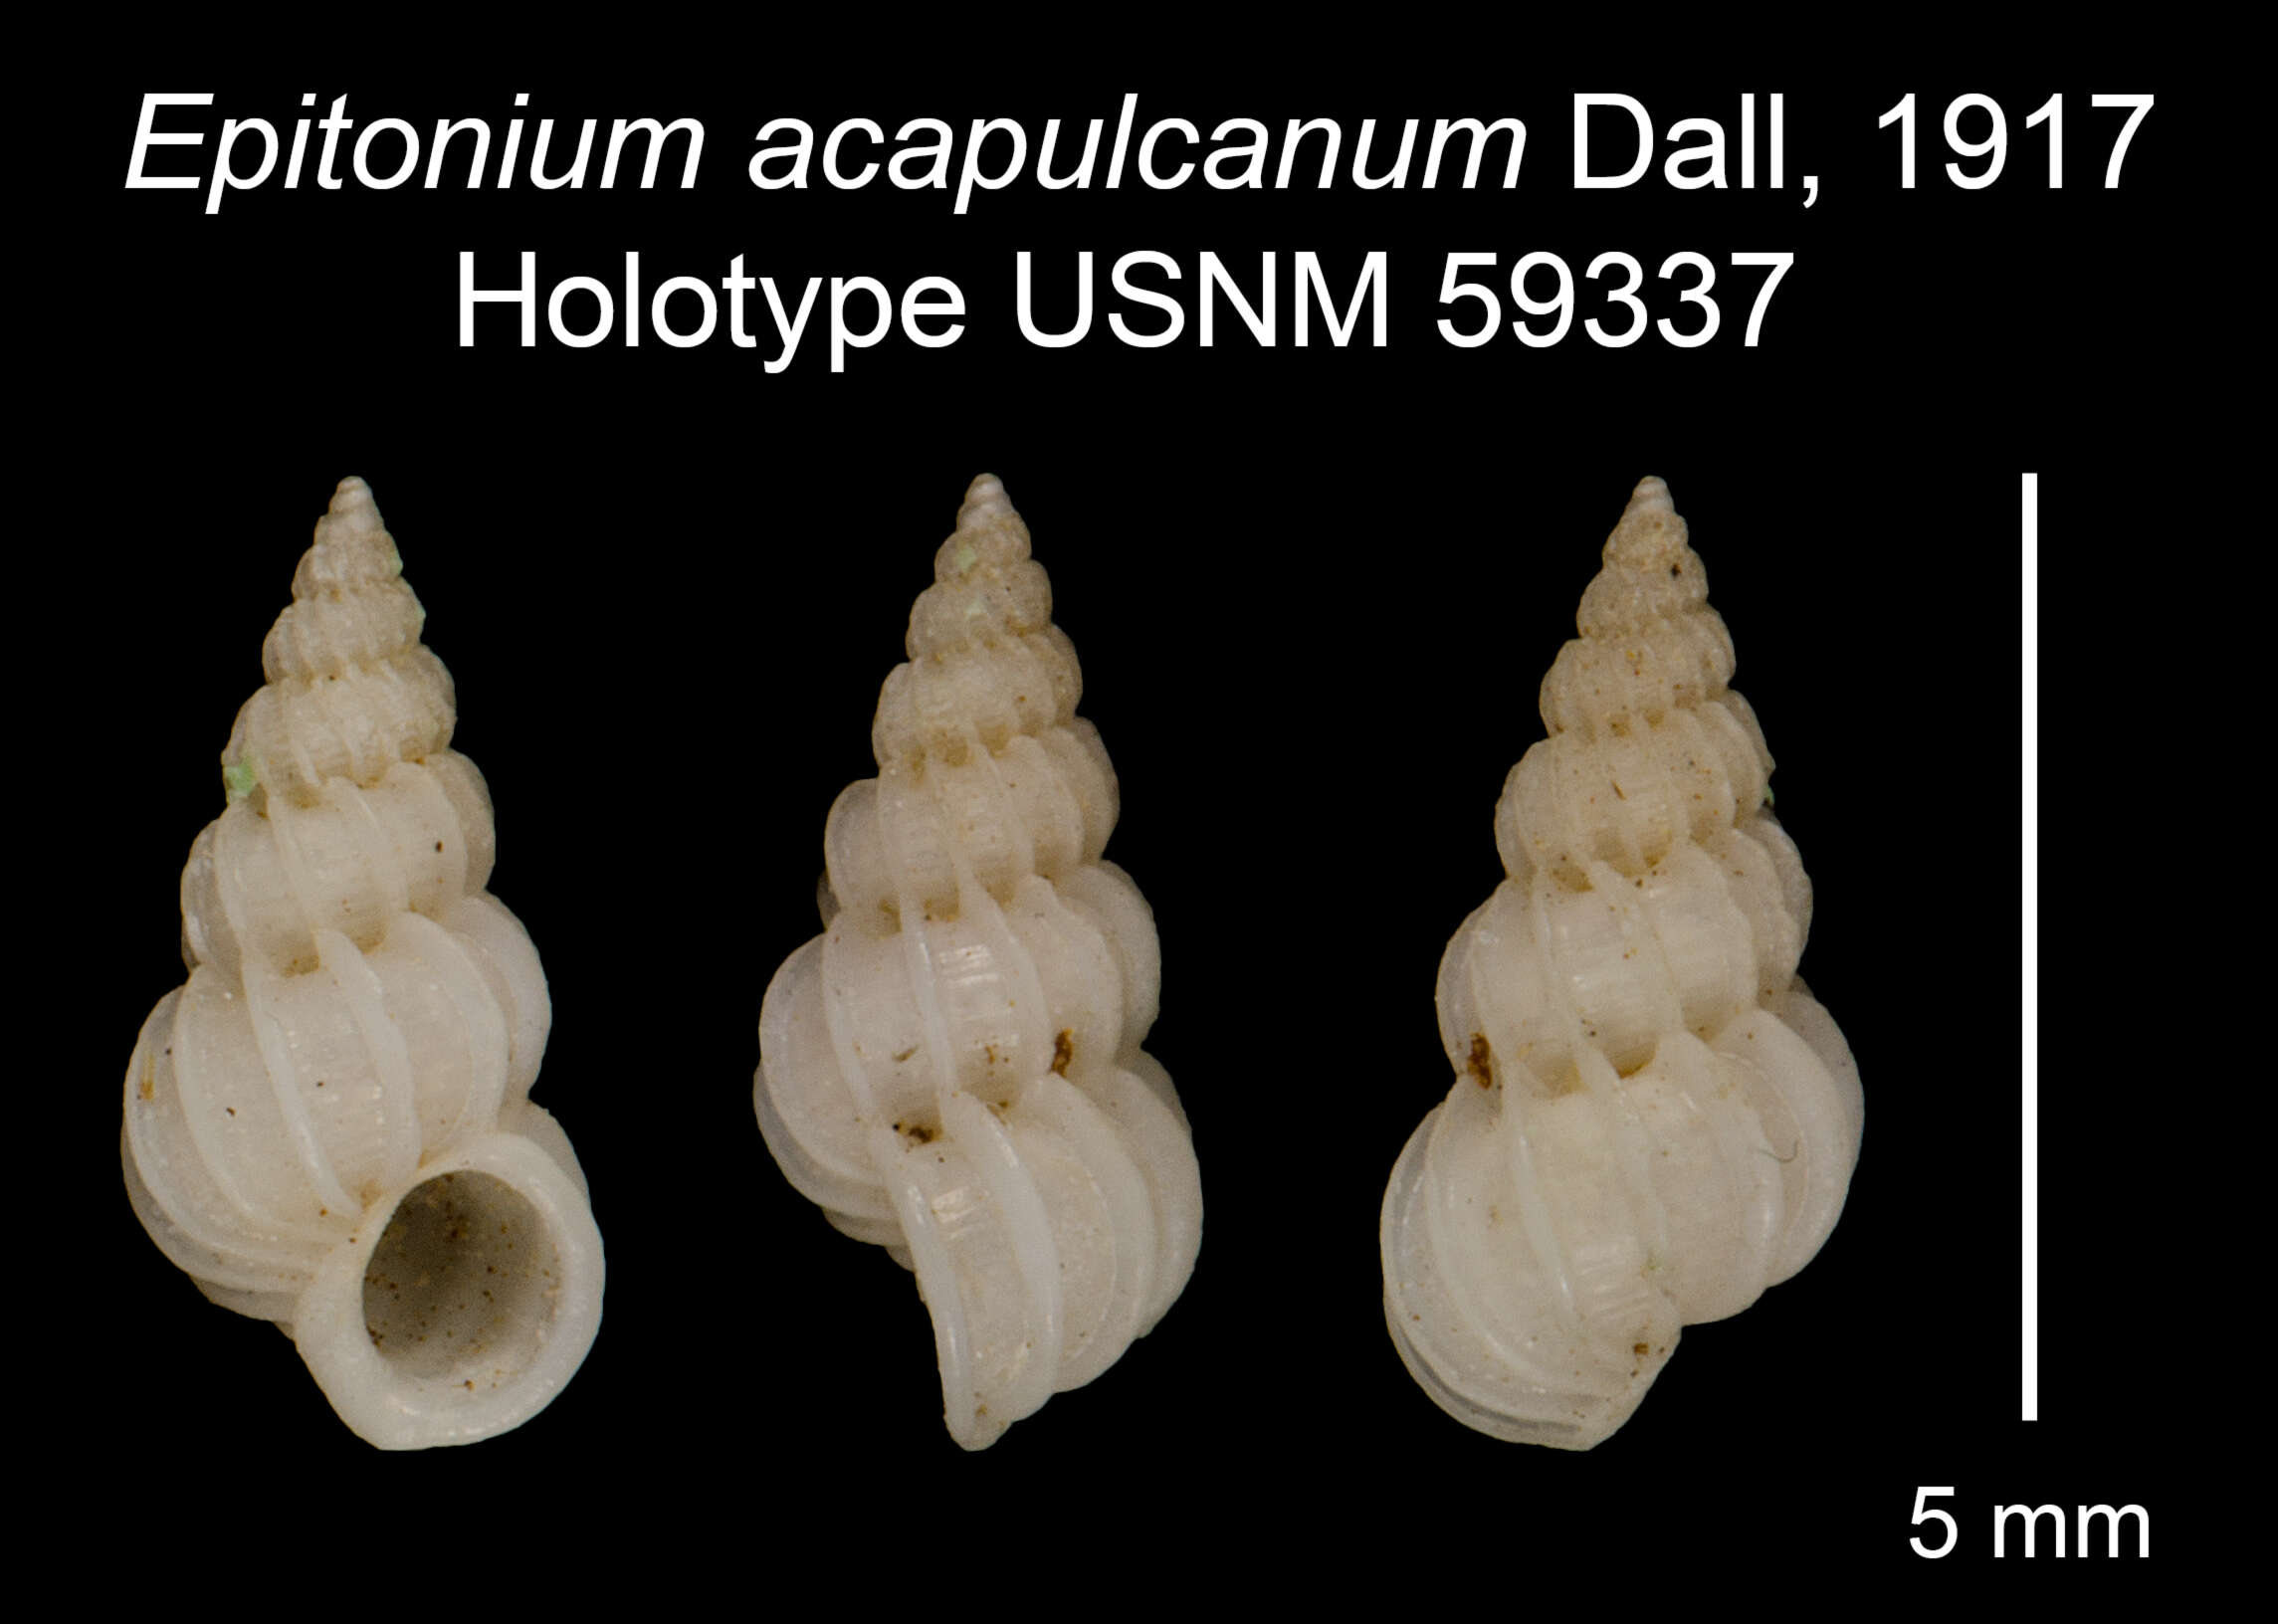 Image of Epitonium acapulcanum Dall 1917